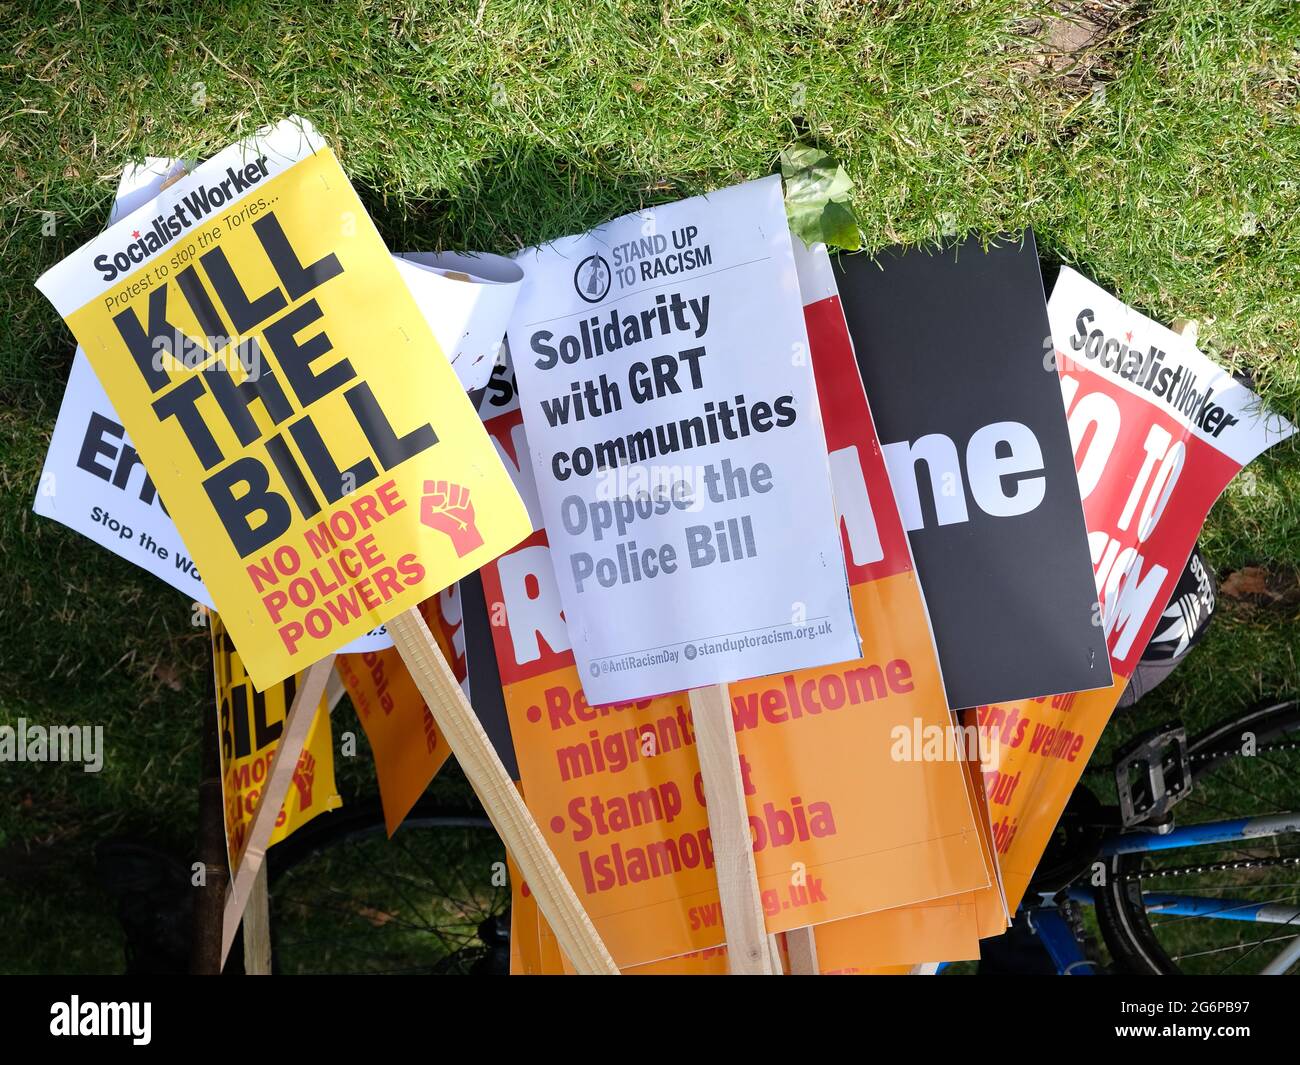 I cartelli di protesta 'uccidere il Bill' che si oppongono al PCSC Bill, secondo i critici, penalizzeranno le comunità di zingari, ROM e viaggiatori se saranno superate. Foto Stock